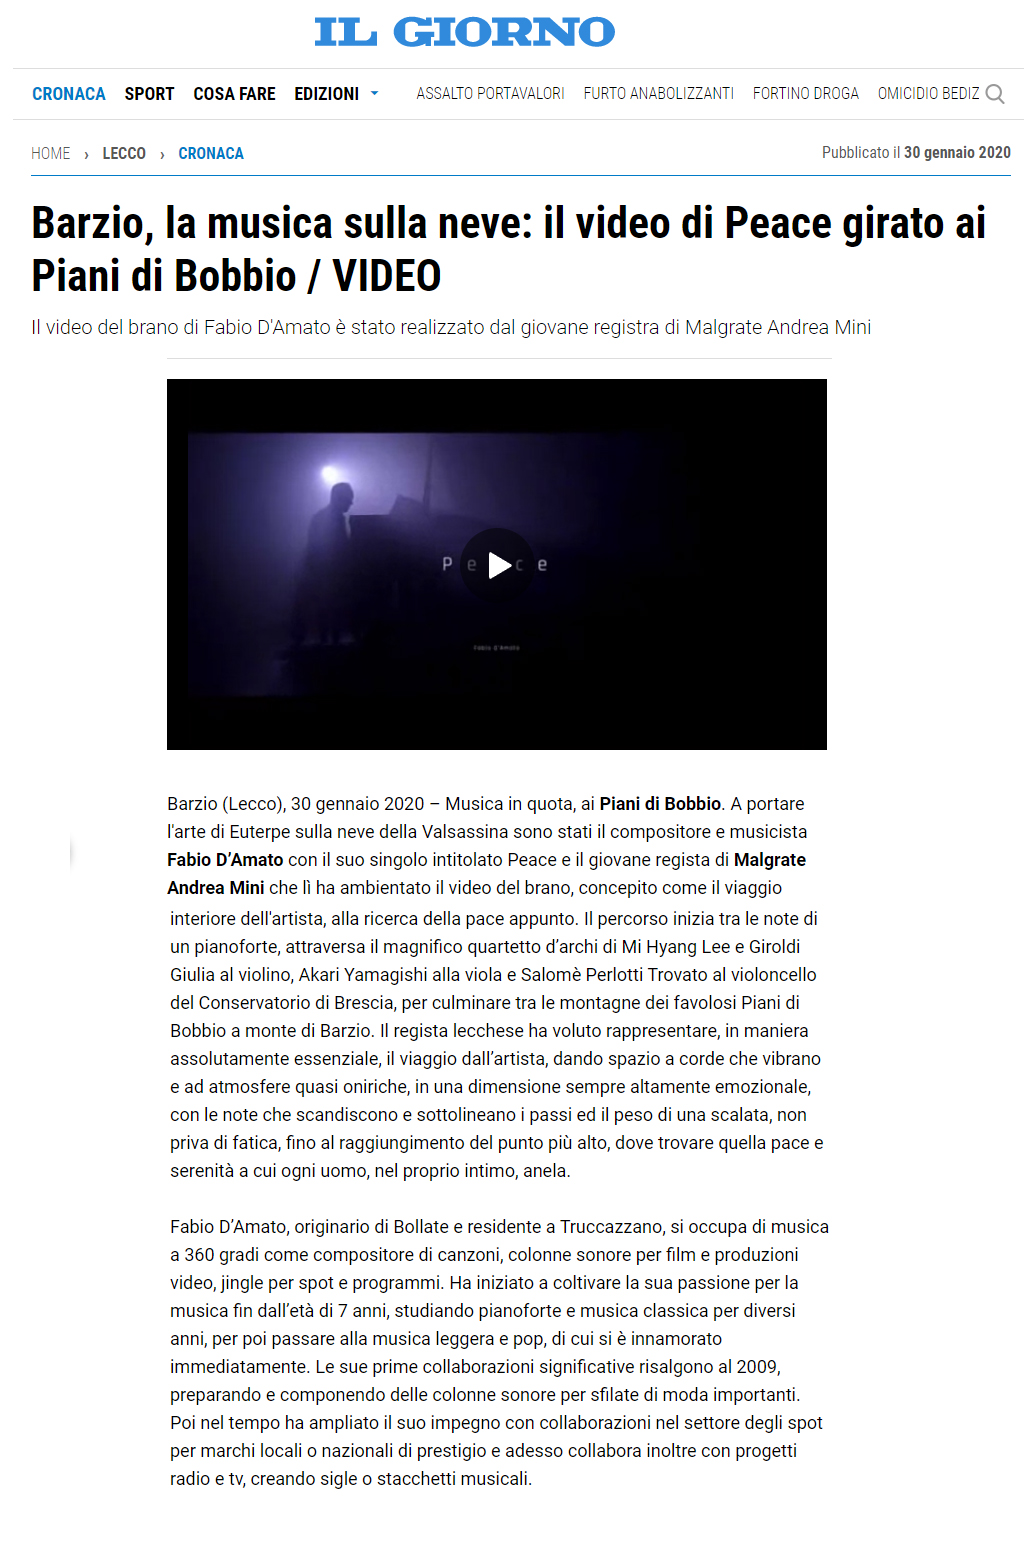 https://www.ilgiorno.it/lecco/cronaca/barzio-video-peace-piani-bobbio-1.5006021